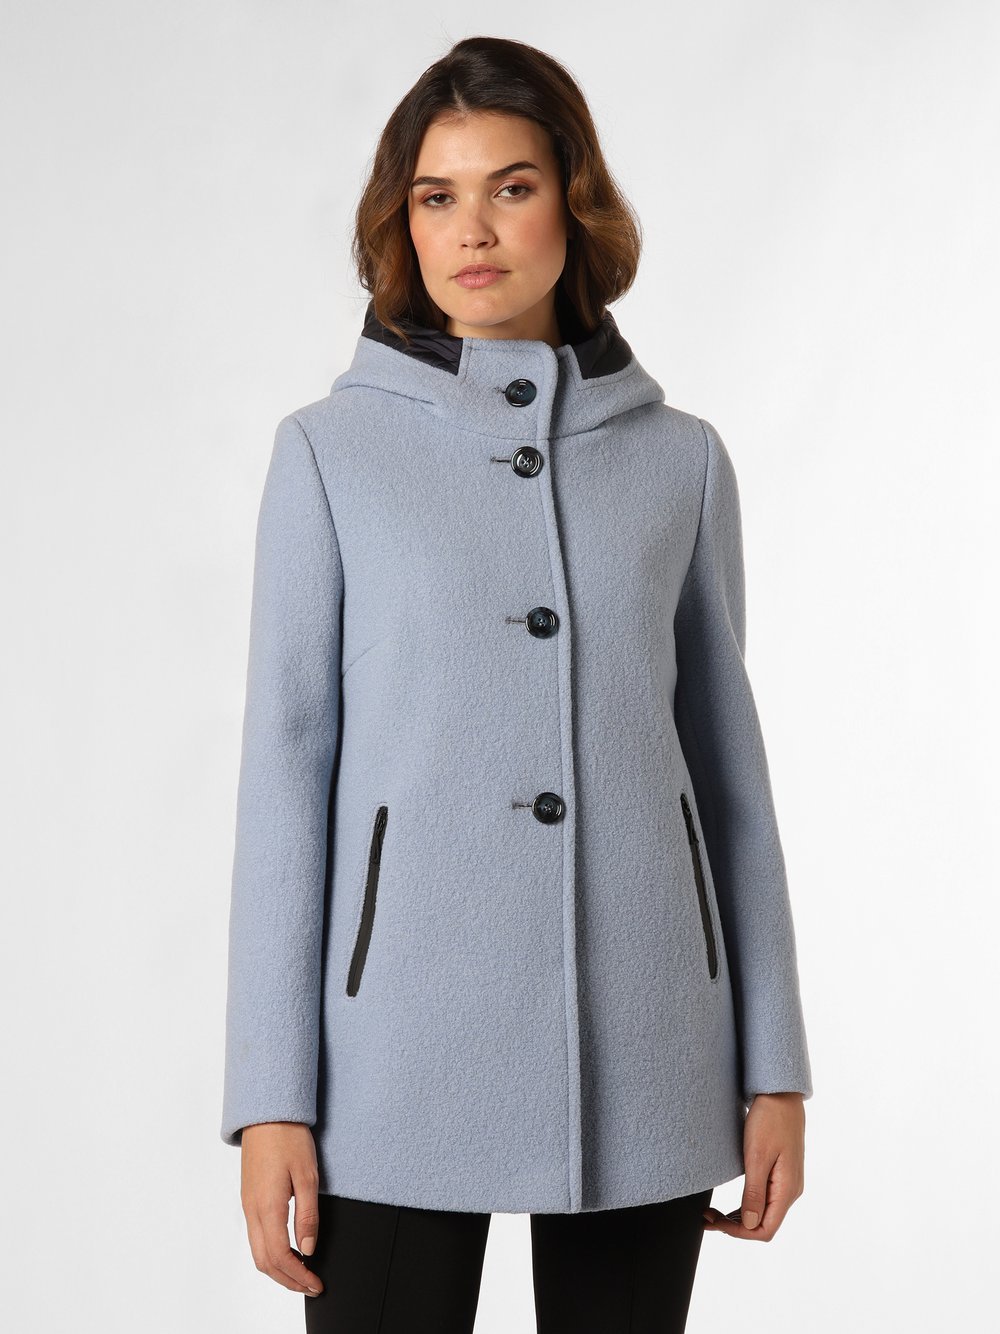 Gil Bret Damski krótki płaszcz Kobiety wełna ze strzyży niebieski jednolity, 34